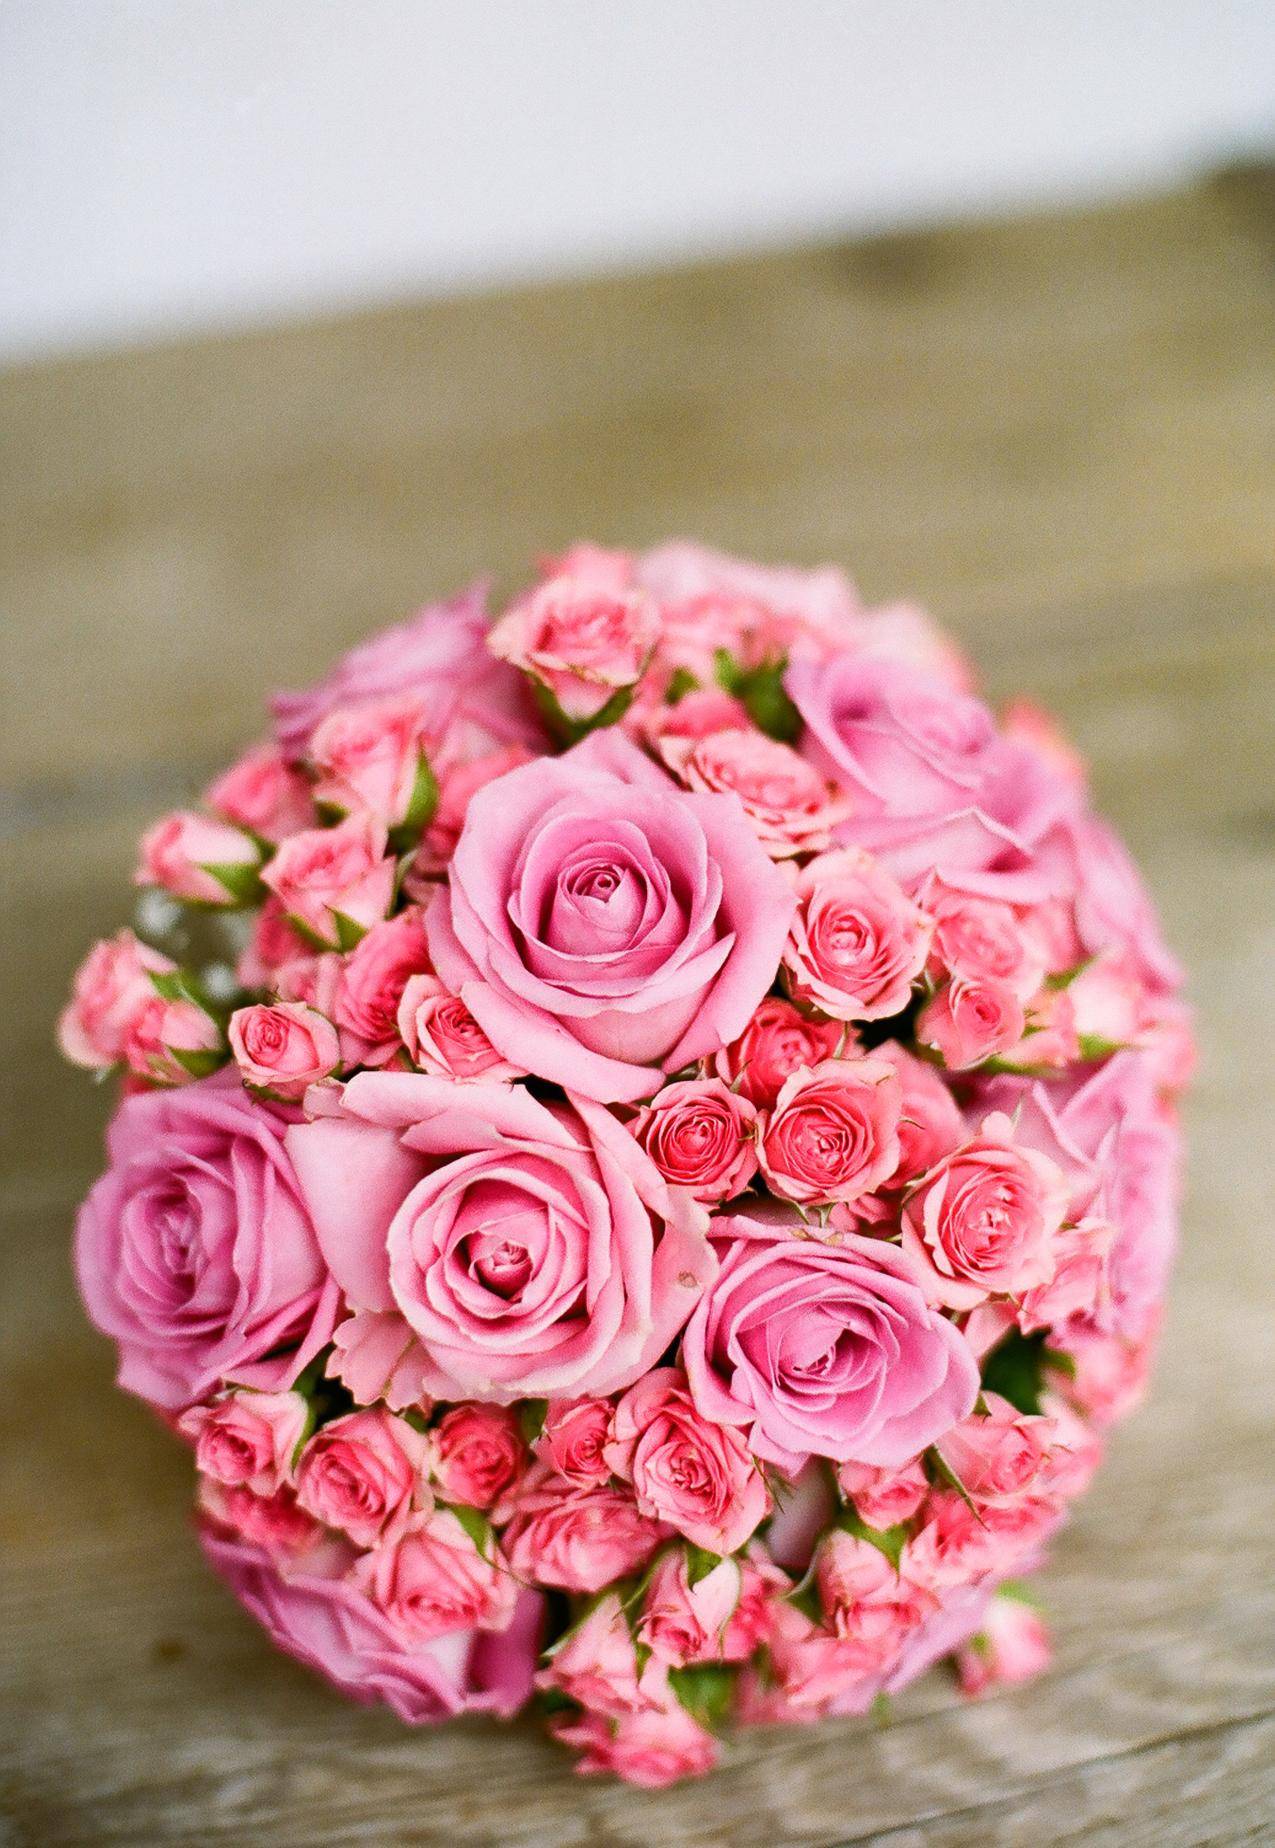 桌上粉红色的花束